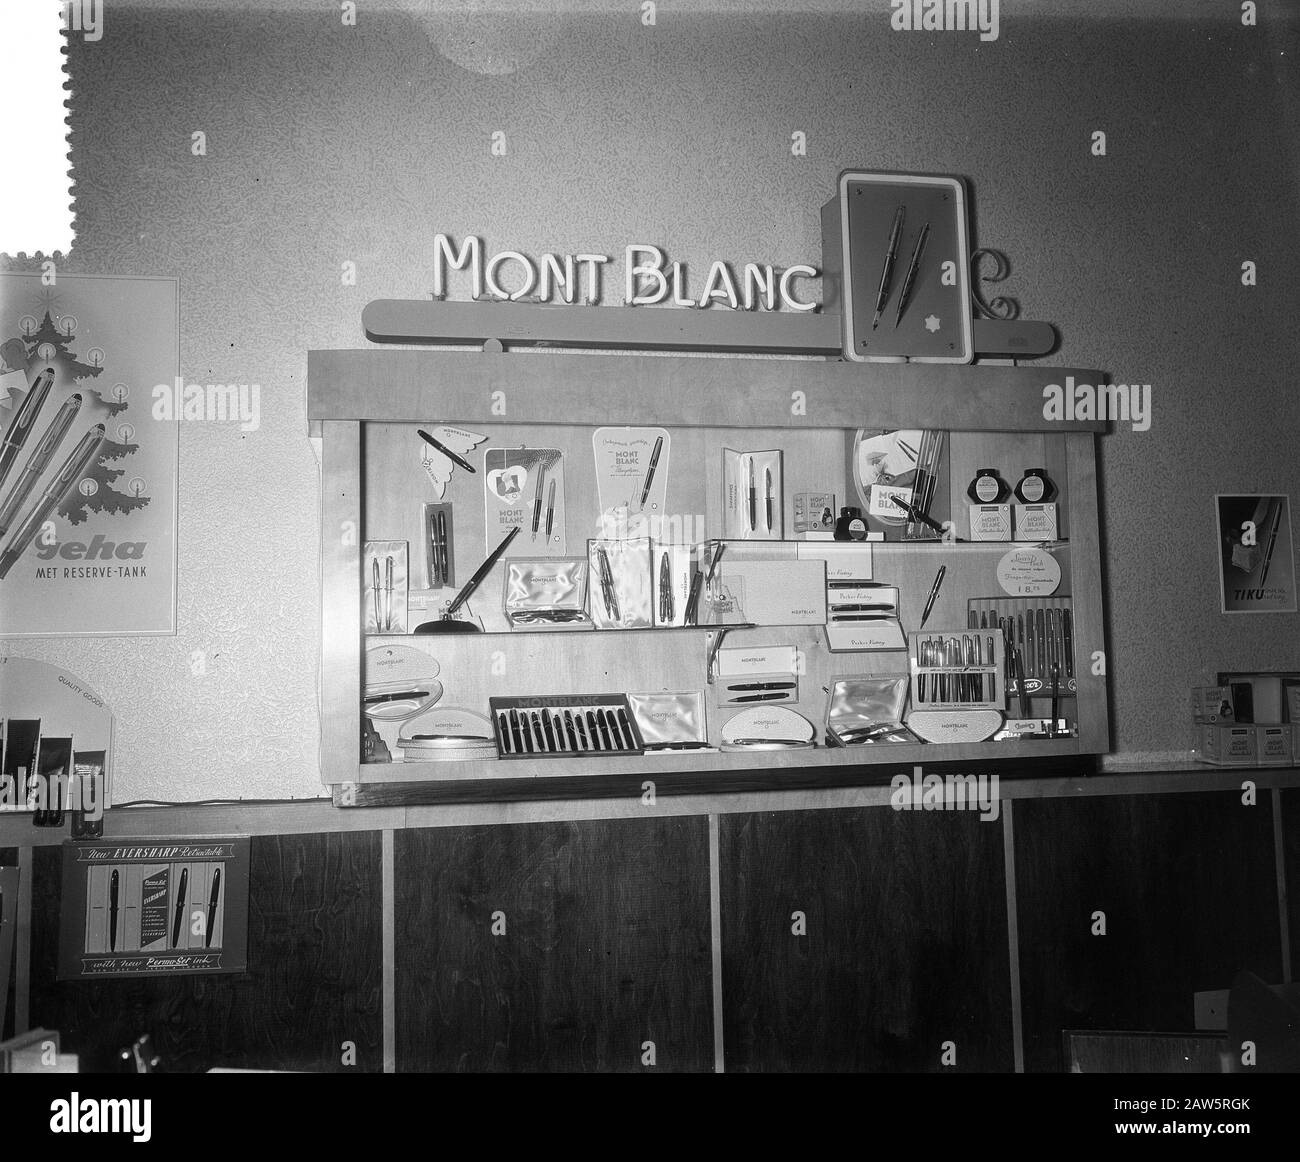 Verträge Montblanc Werbung Zeist Termine: 22. Juni 1955 Standort: Utrechter, Zeist Stichwörter: Werbeperson Name: Montblanc Werbung Stockfoto